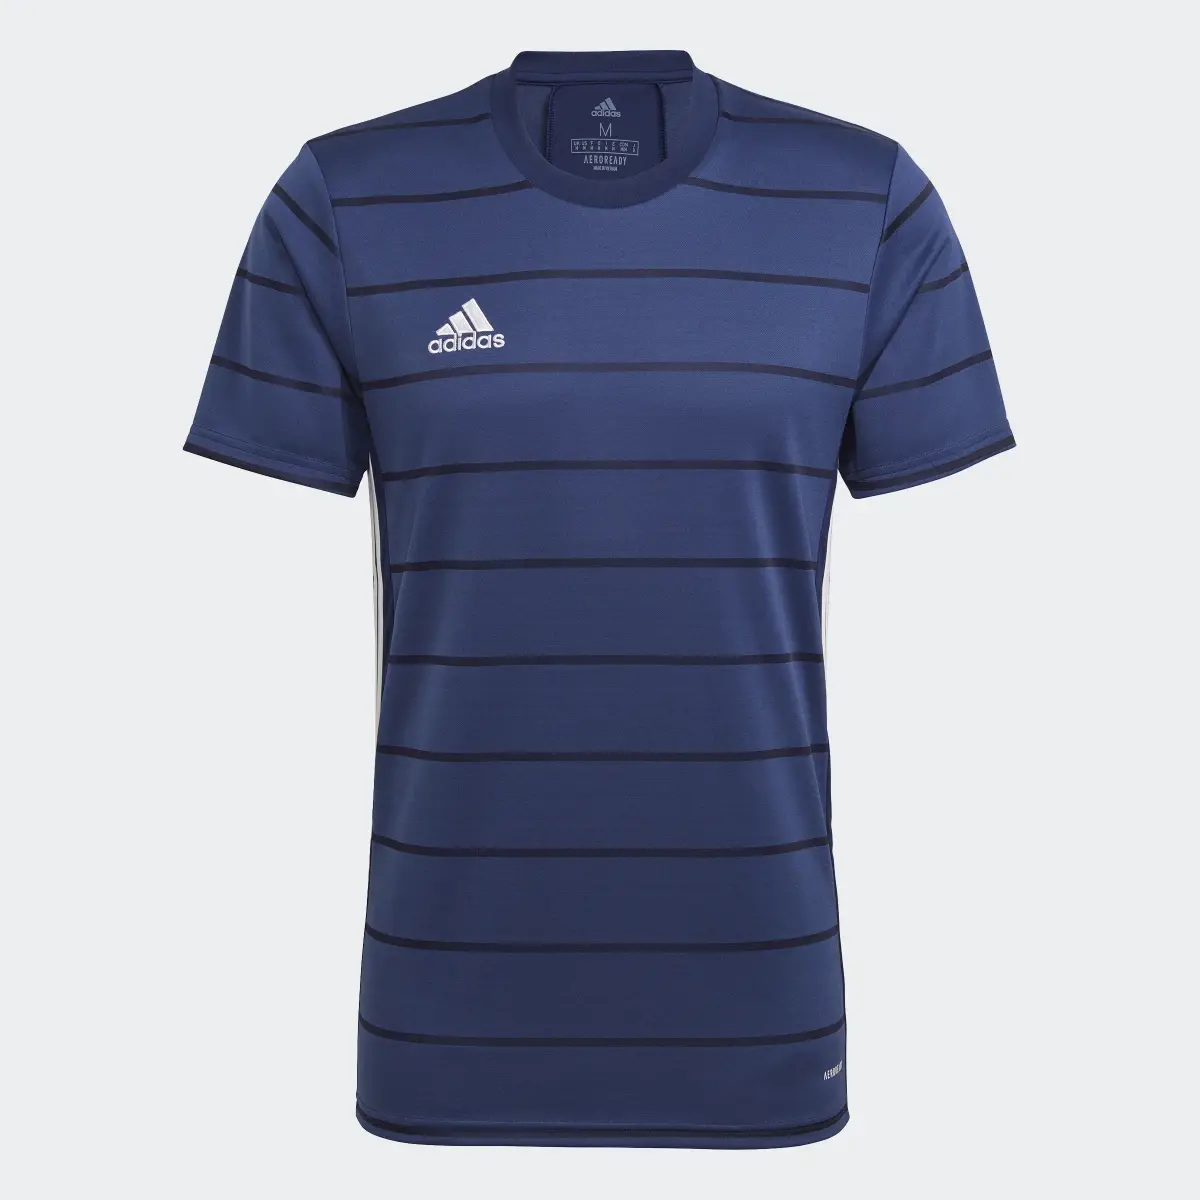 Adidas Camiseta Campeon 21. 1